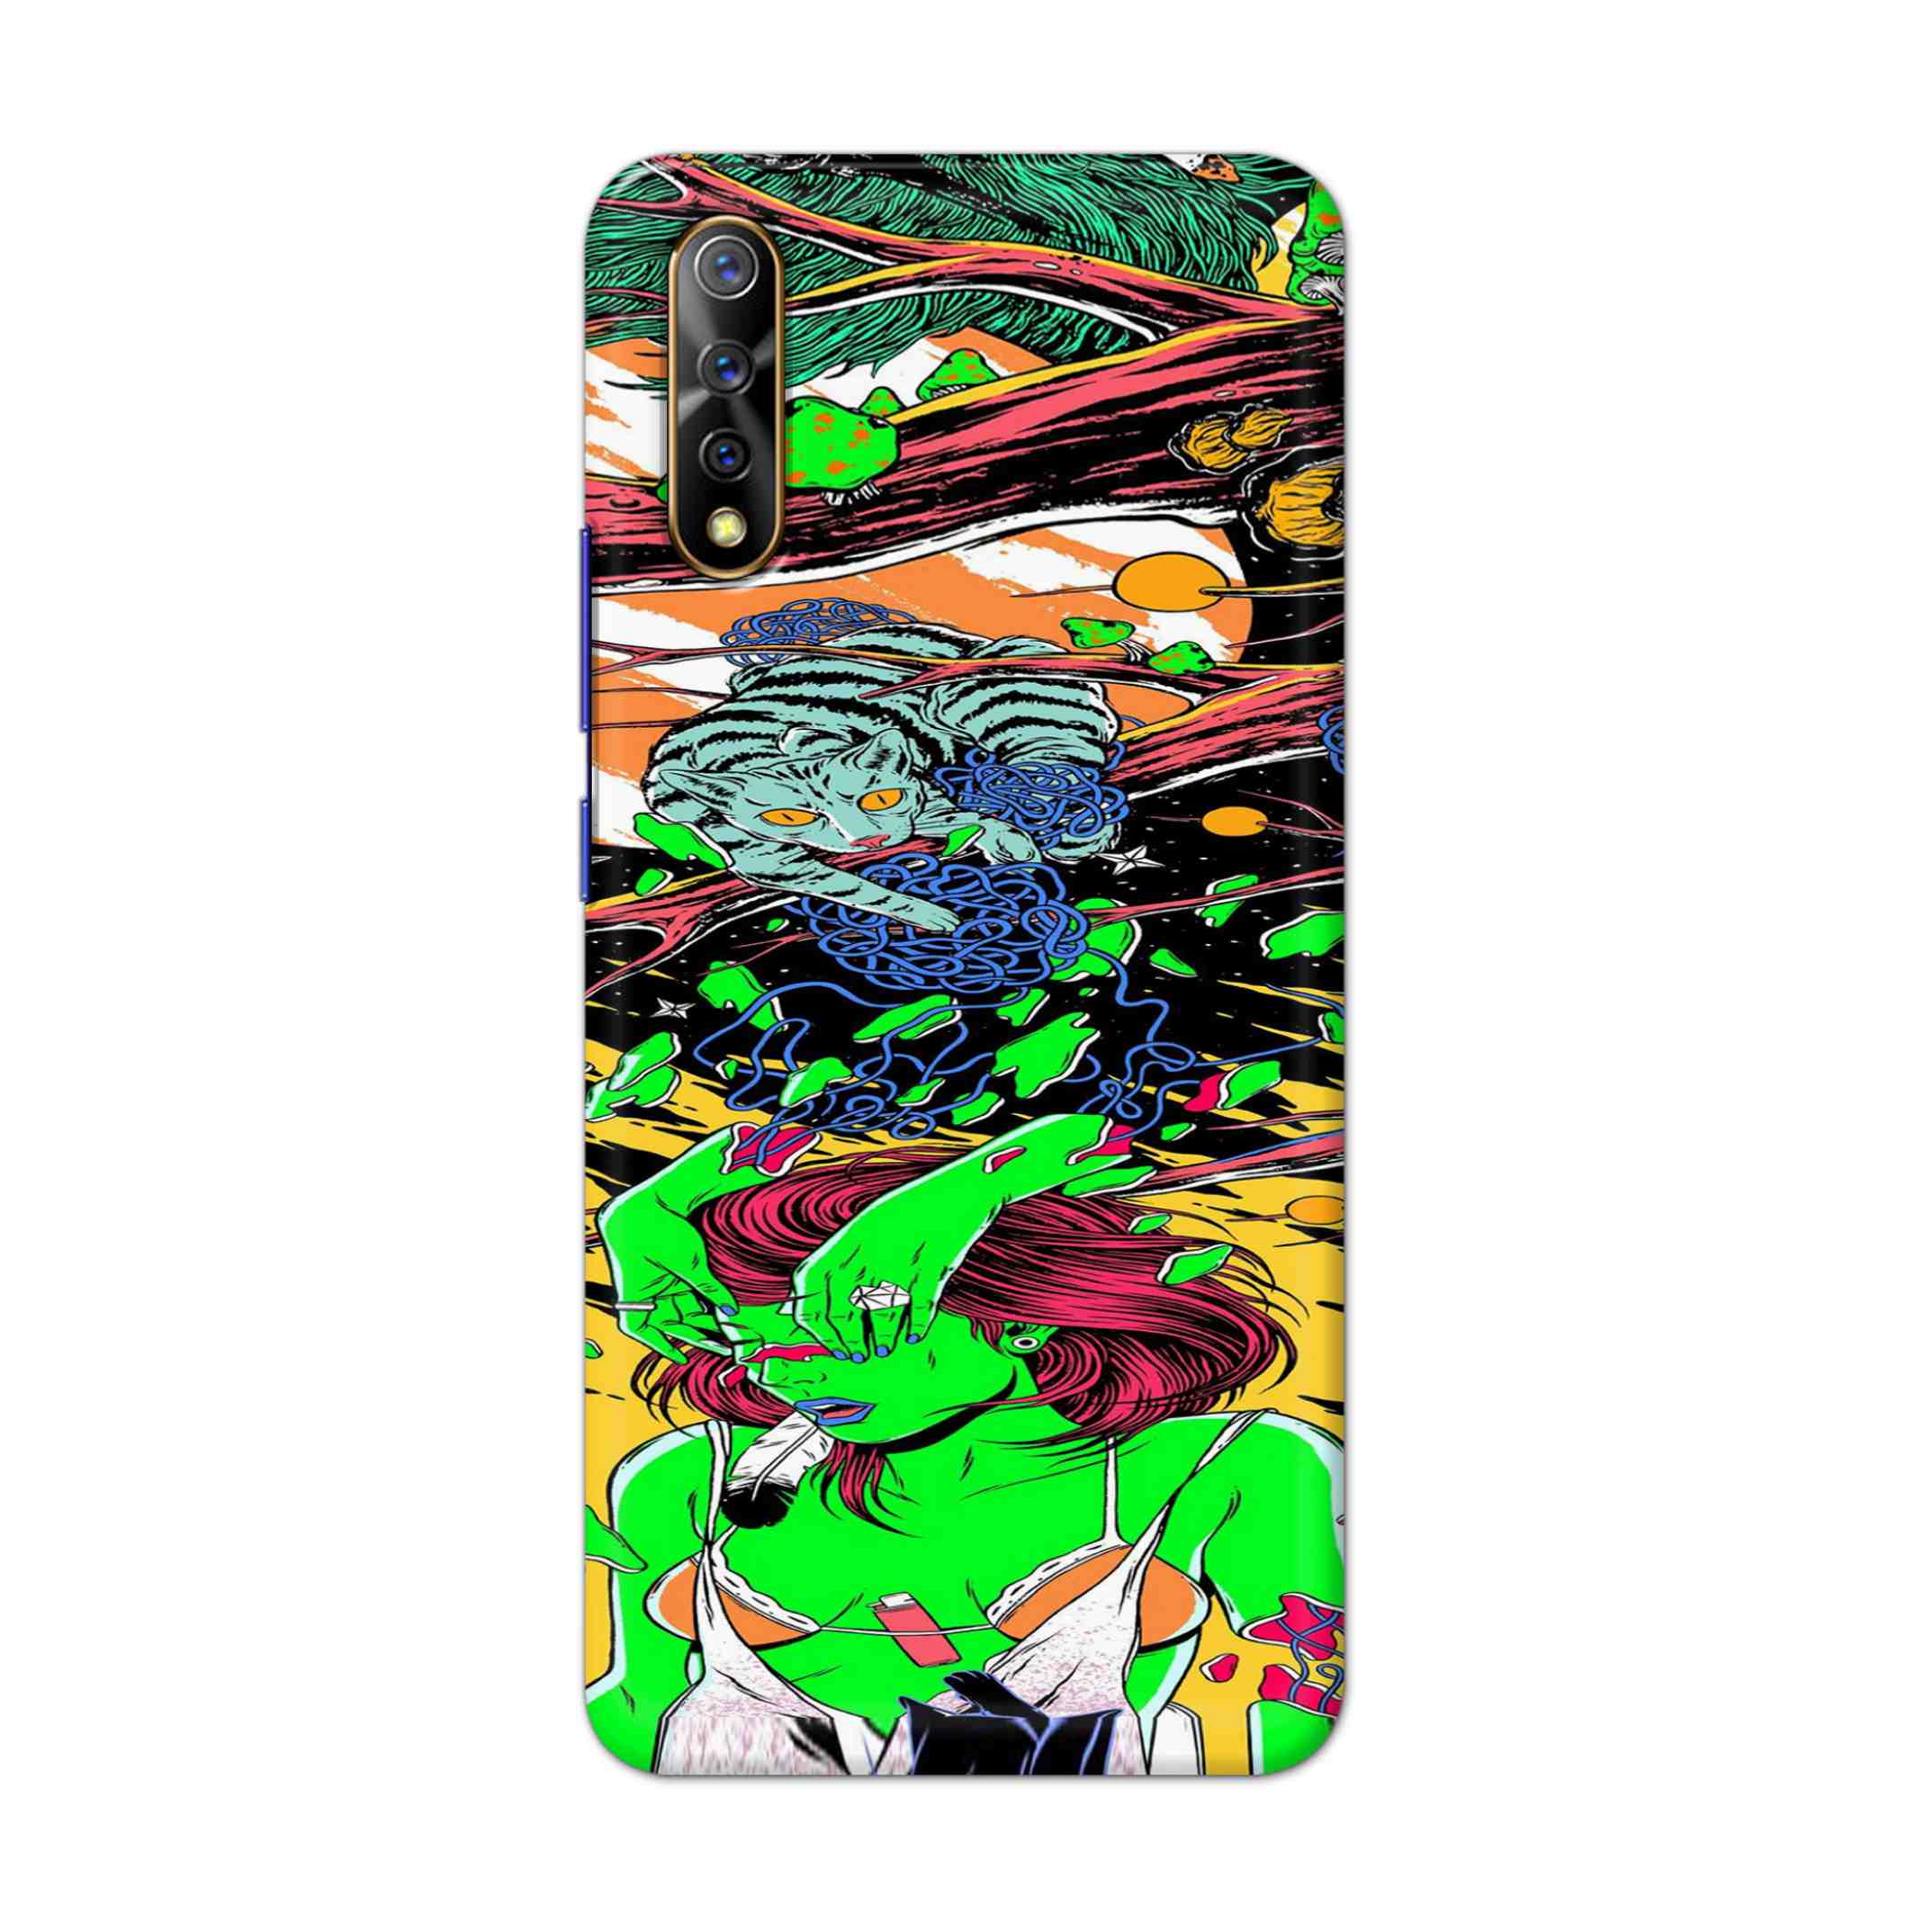 Buy Green Girl Art Hard Back Mobile Phone Case Cover For Vivo S1 / Z1x Online